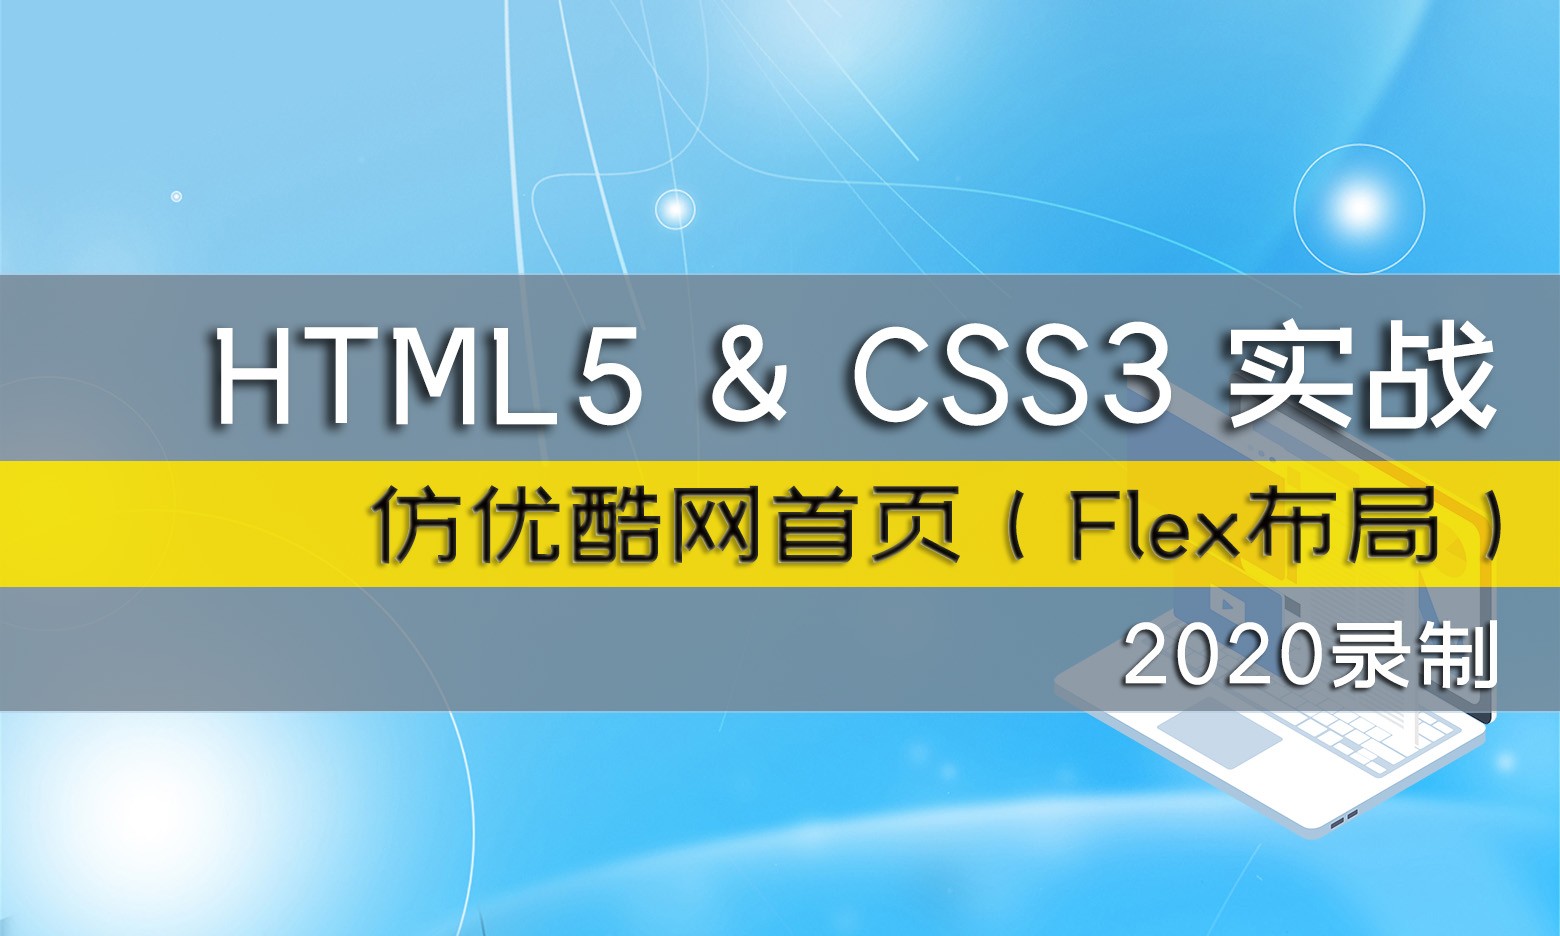 2020年录制HTML5/CSS3手机网站实战课程仿优酷首页（Flex布局）